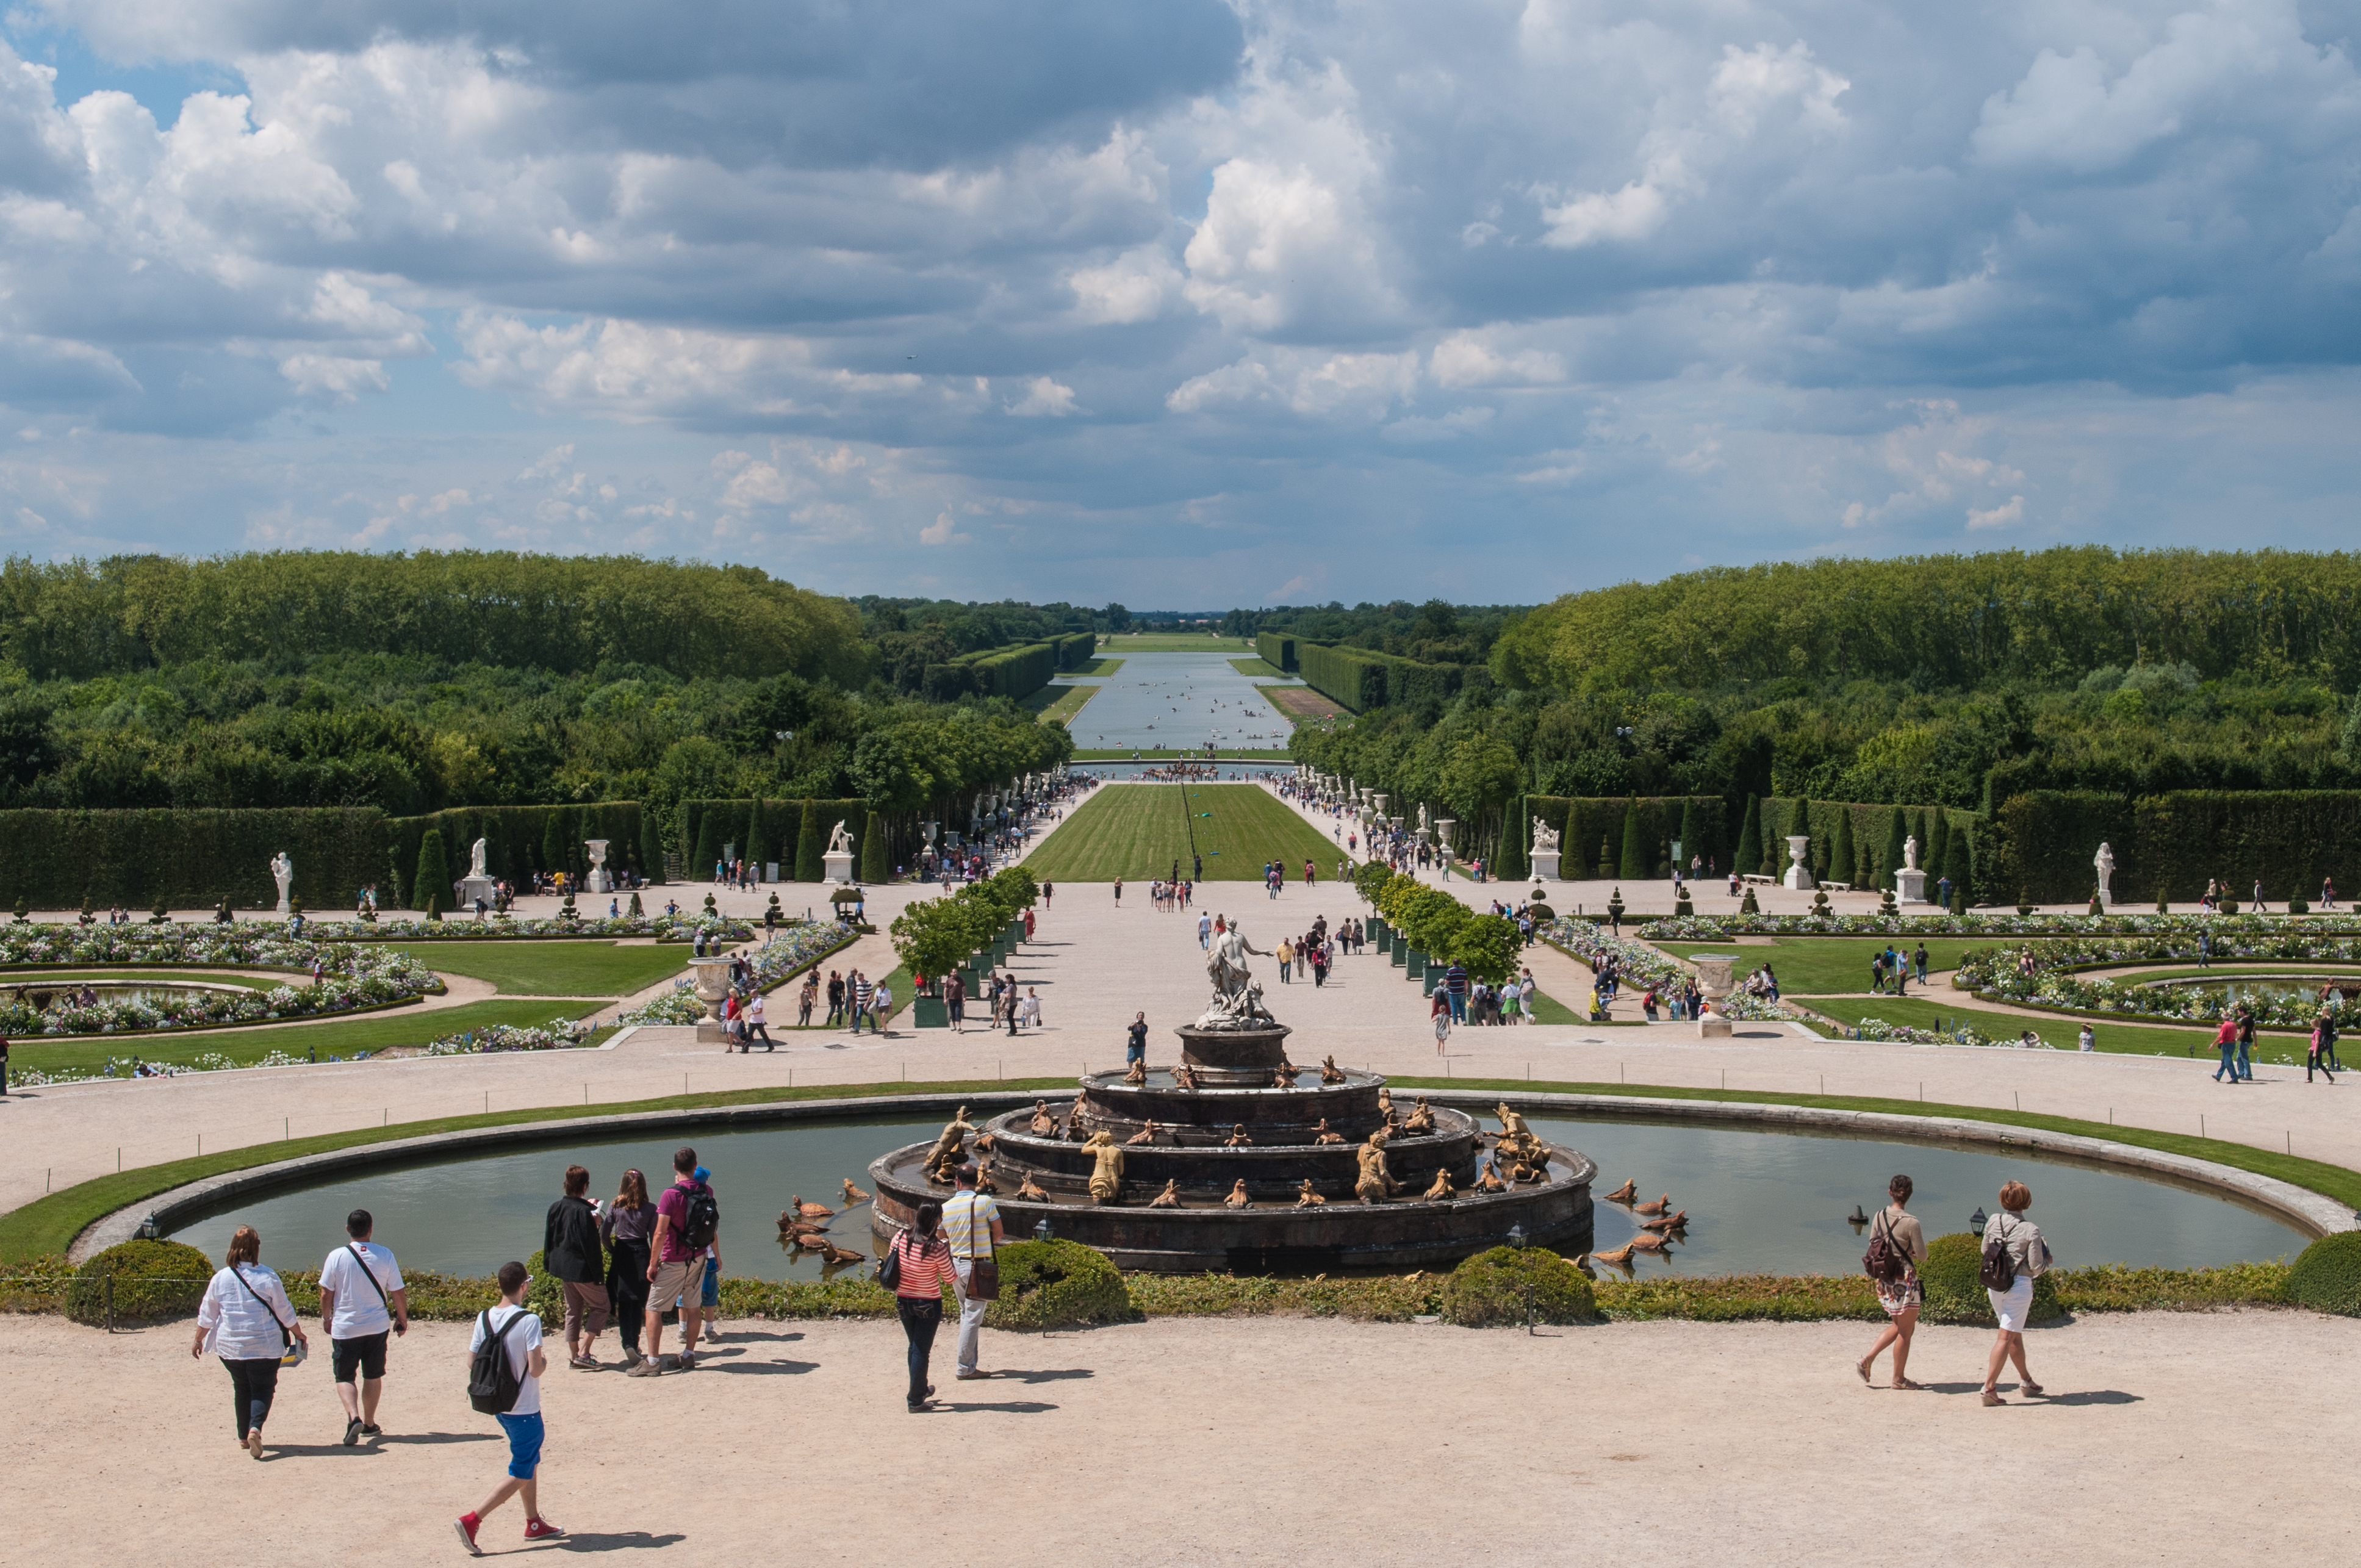 Axis of garden at Versailles.